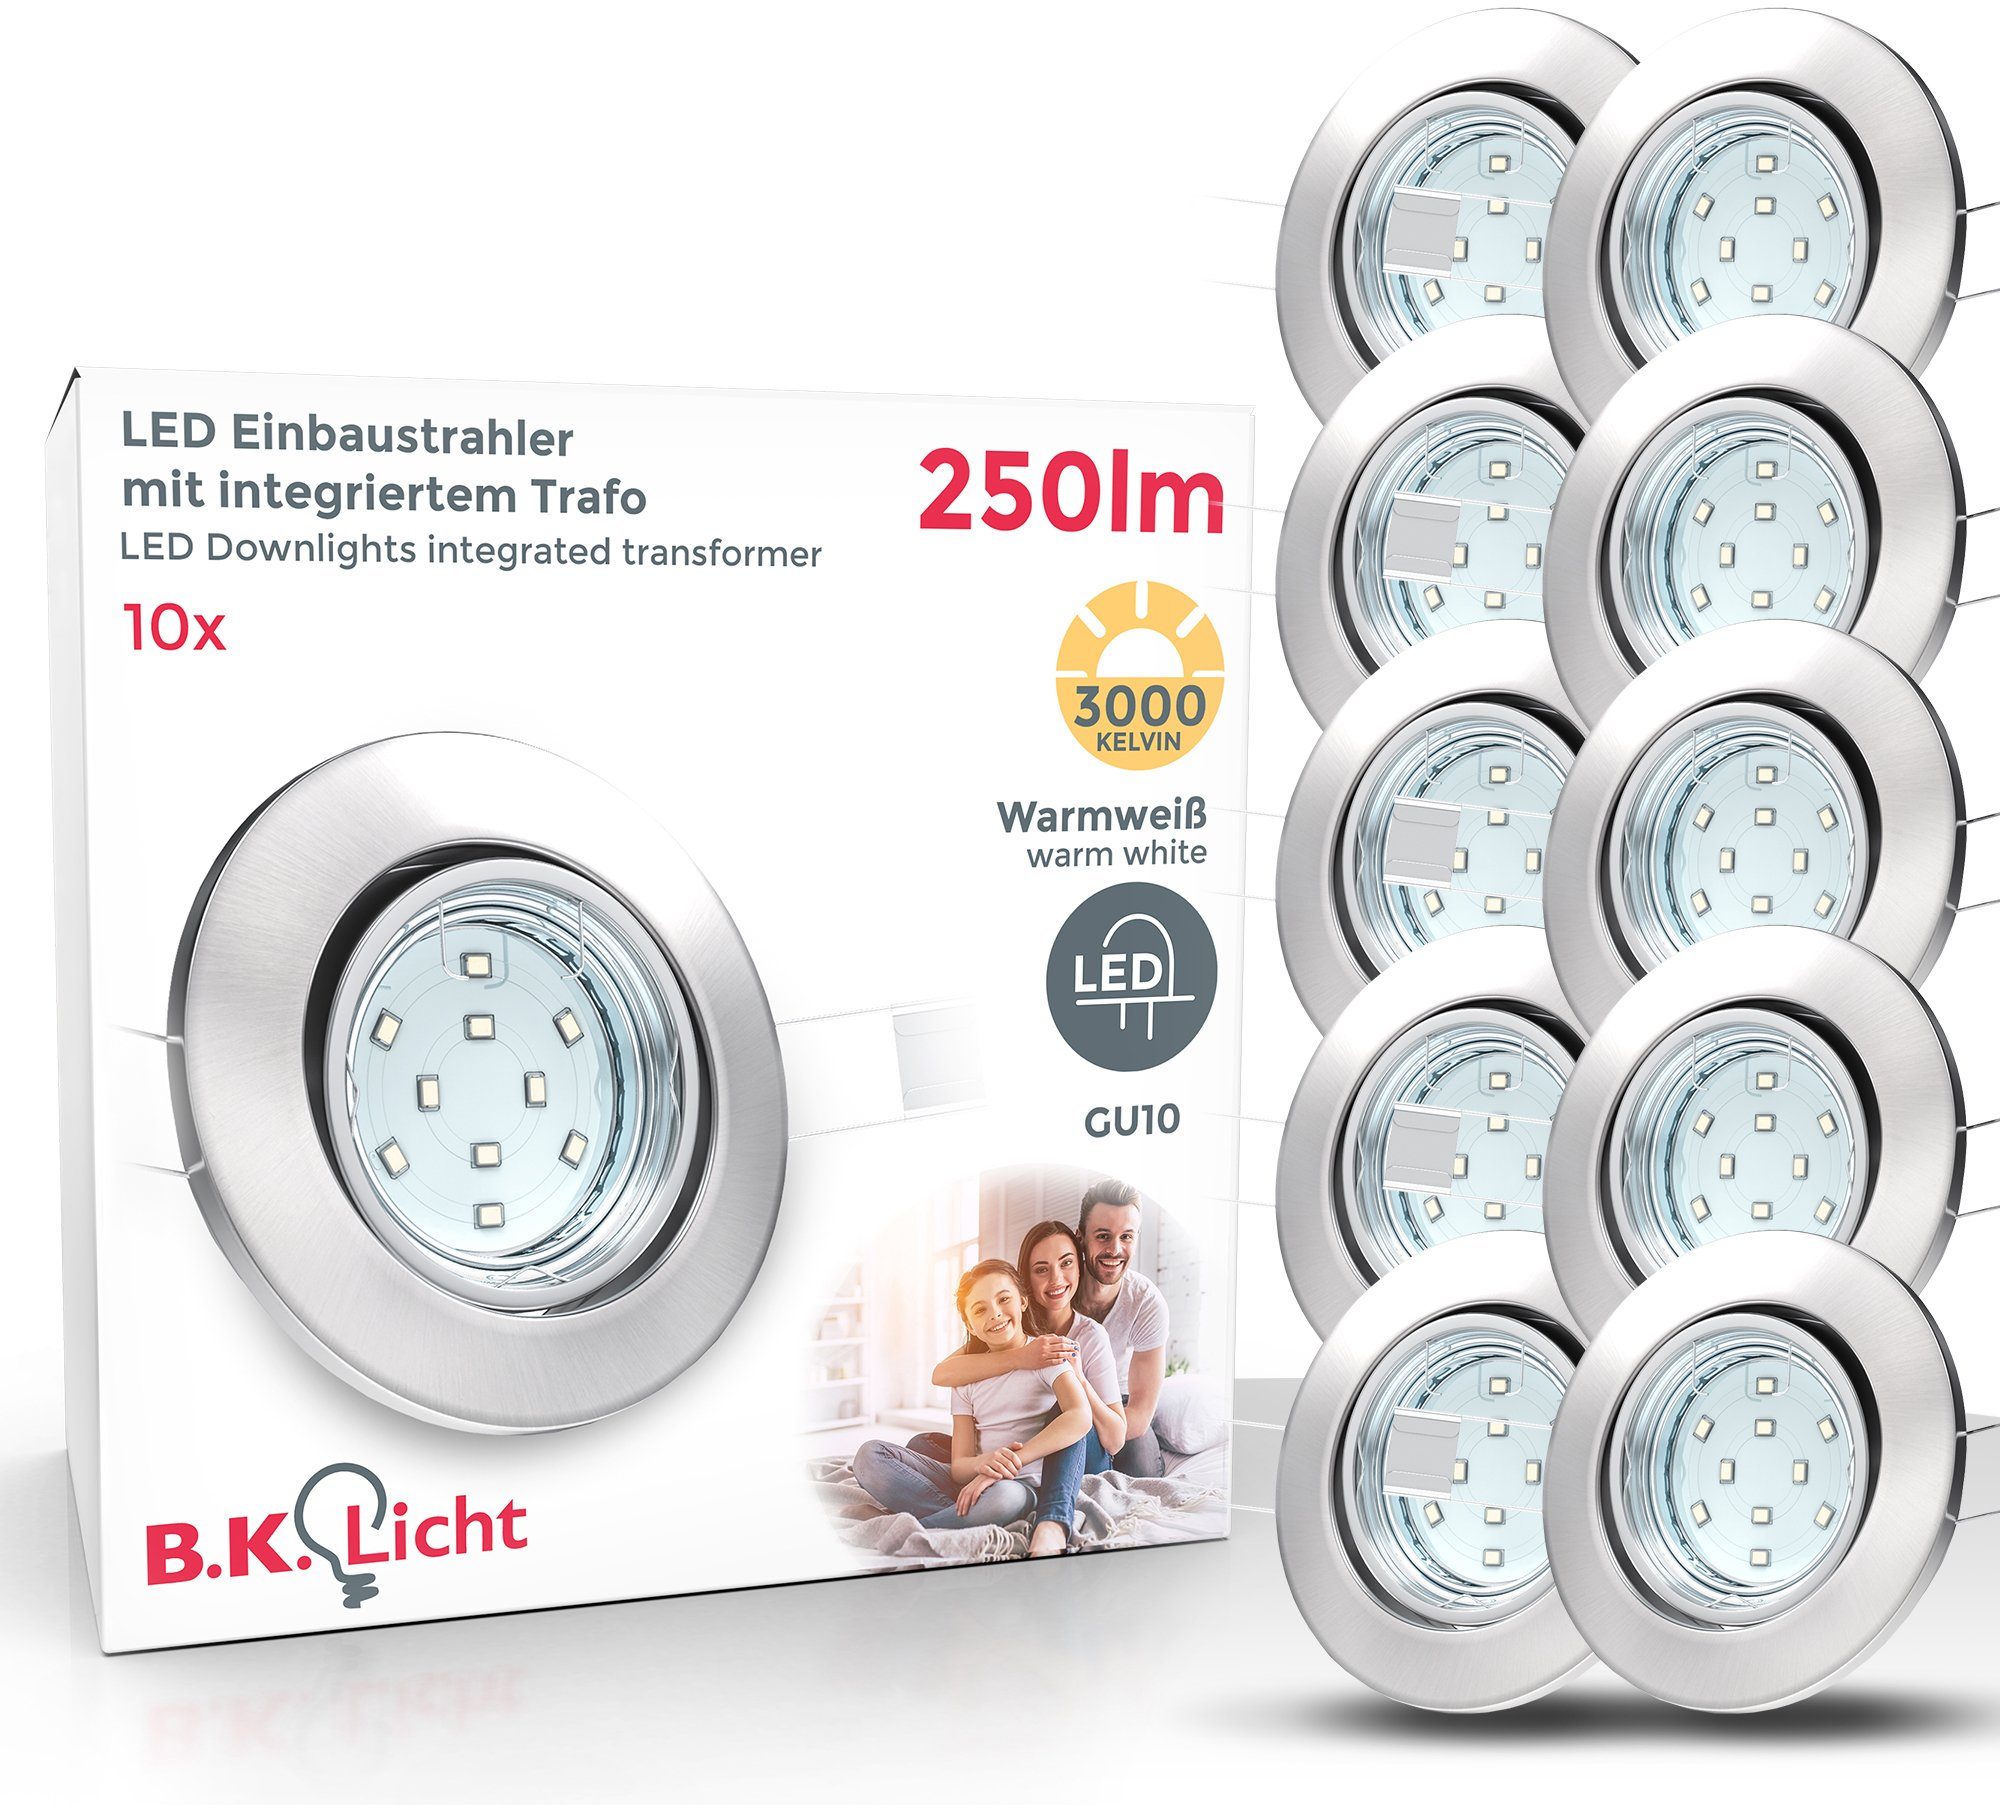 LED wechselbar, 3W 250lm Warmweiß, schwenkbar, Leuchtmittel inkl. weiß, Decken-Spot LED Einbauleuchten, B.K.Licht Einbaustrahler, GU10,